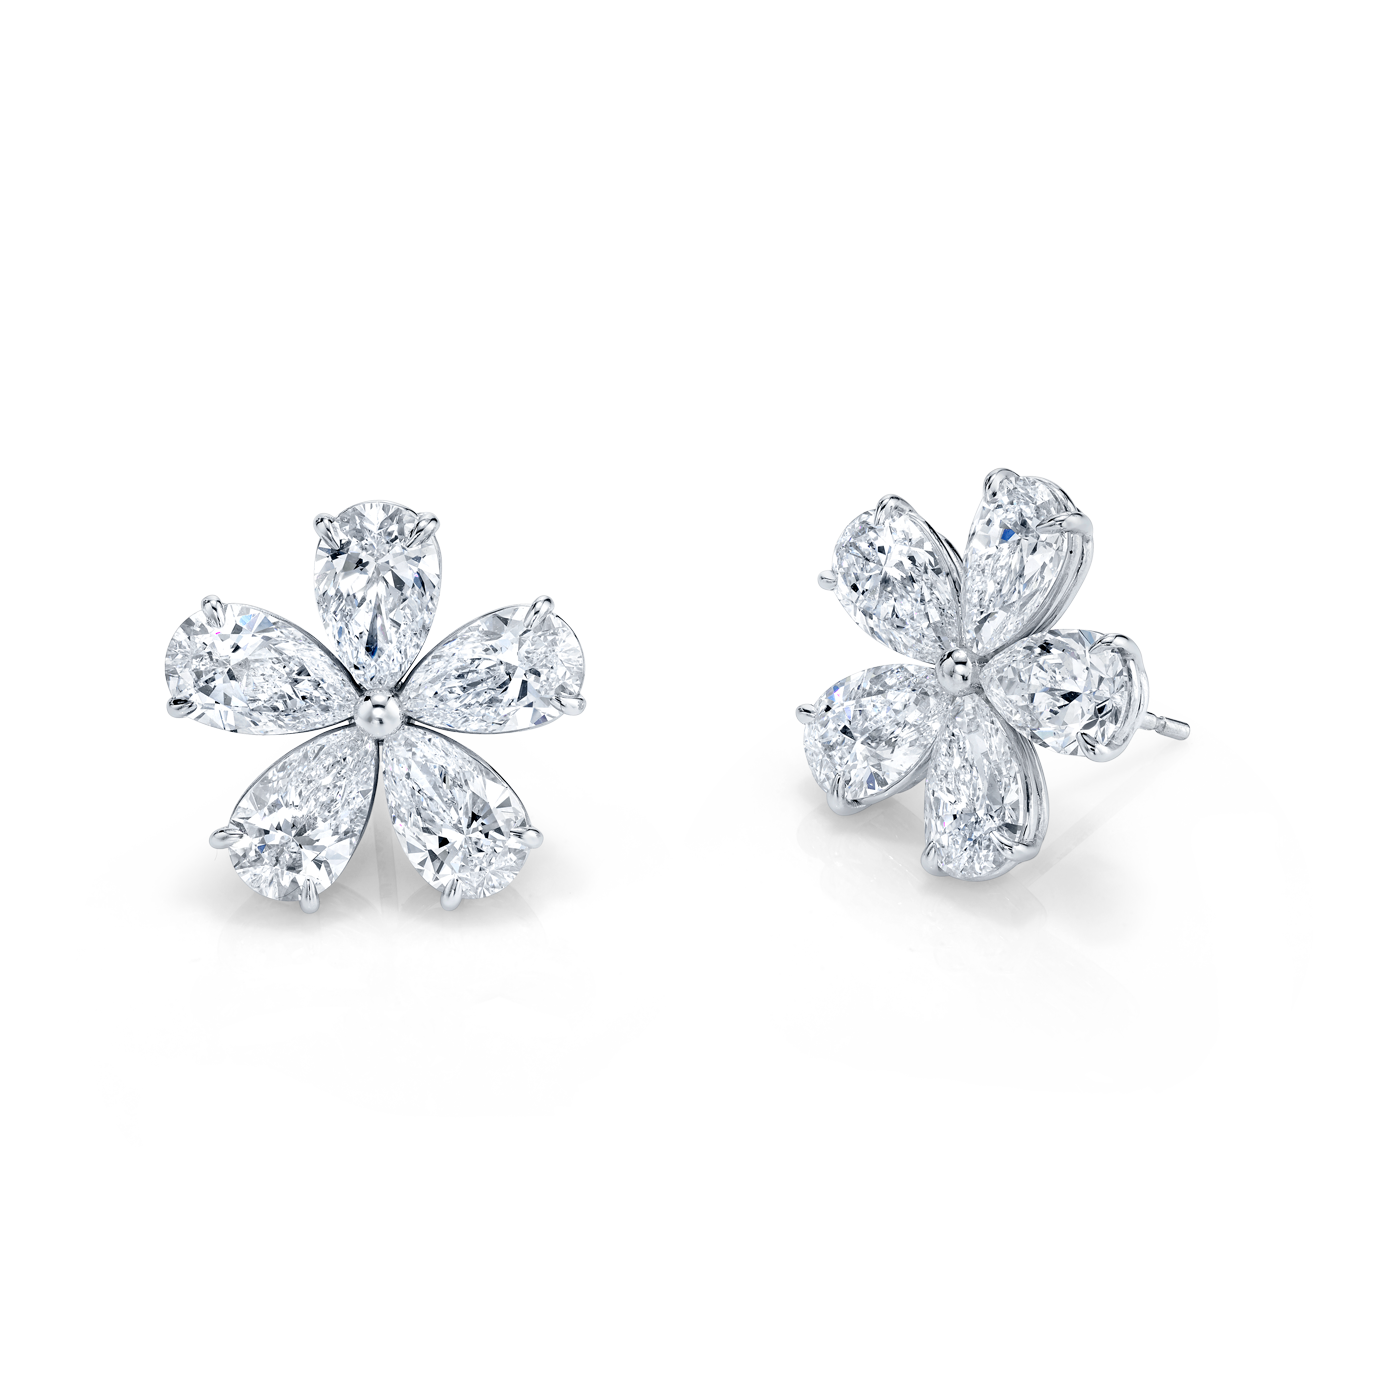 Diamond Floret Earrings in 18k White Gold